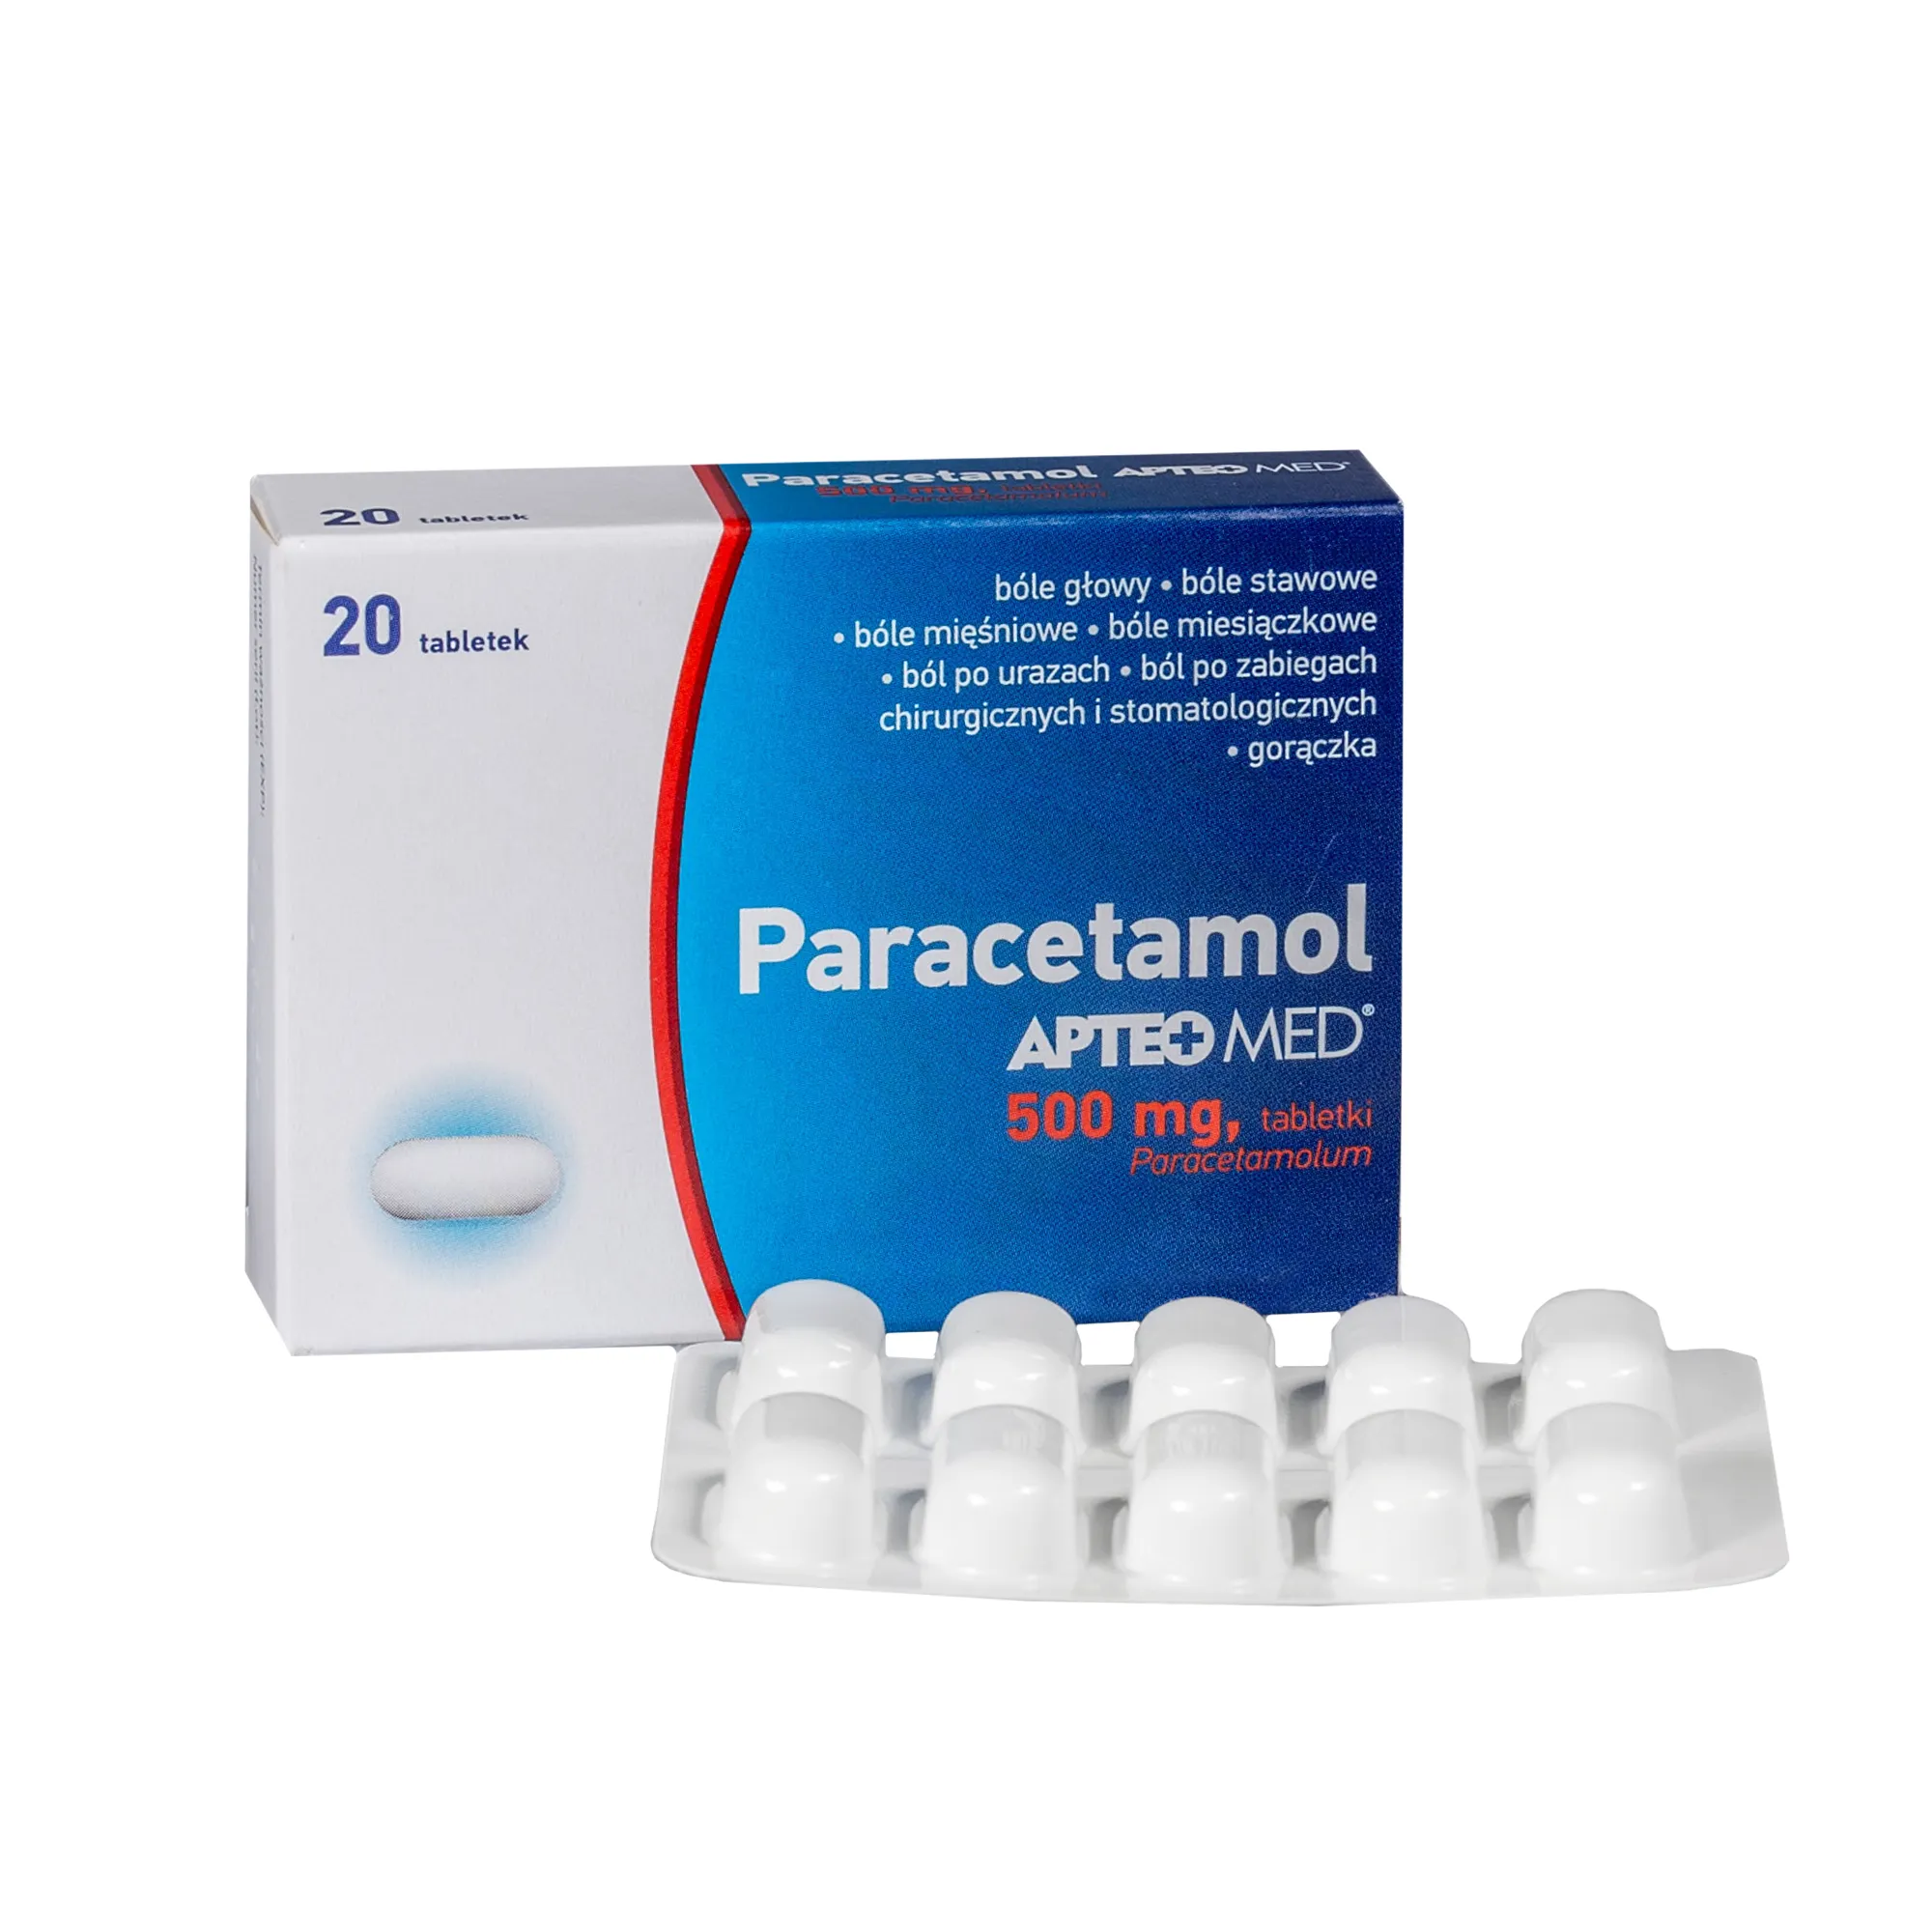 Paracetamol Apteo Med, 500 mg, 20 tabletek 